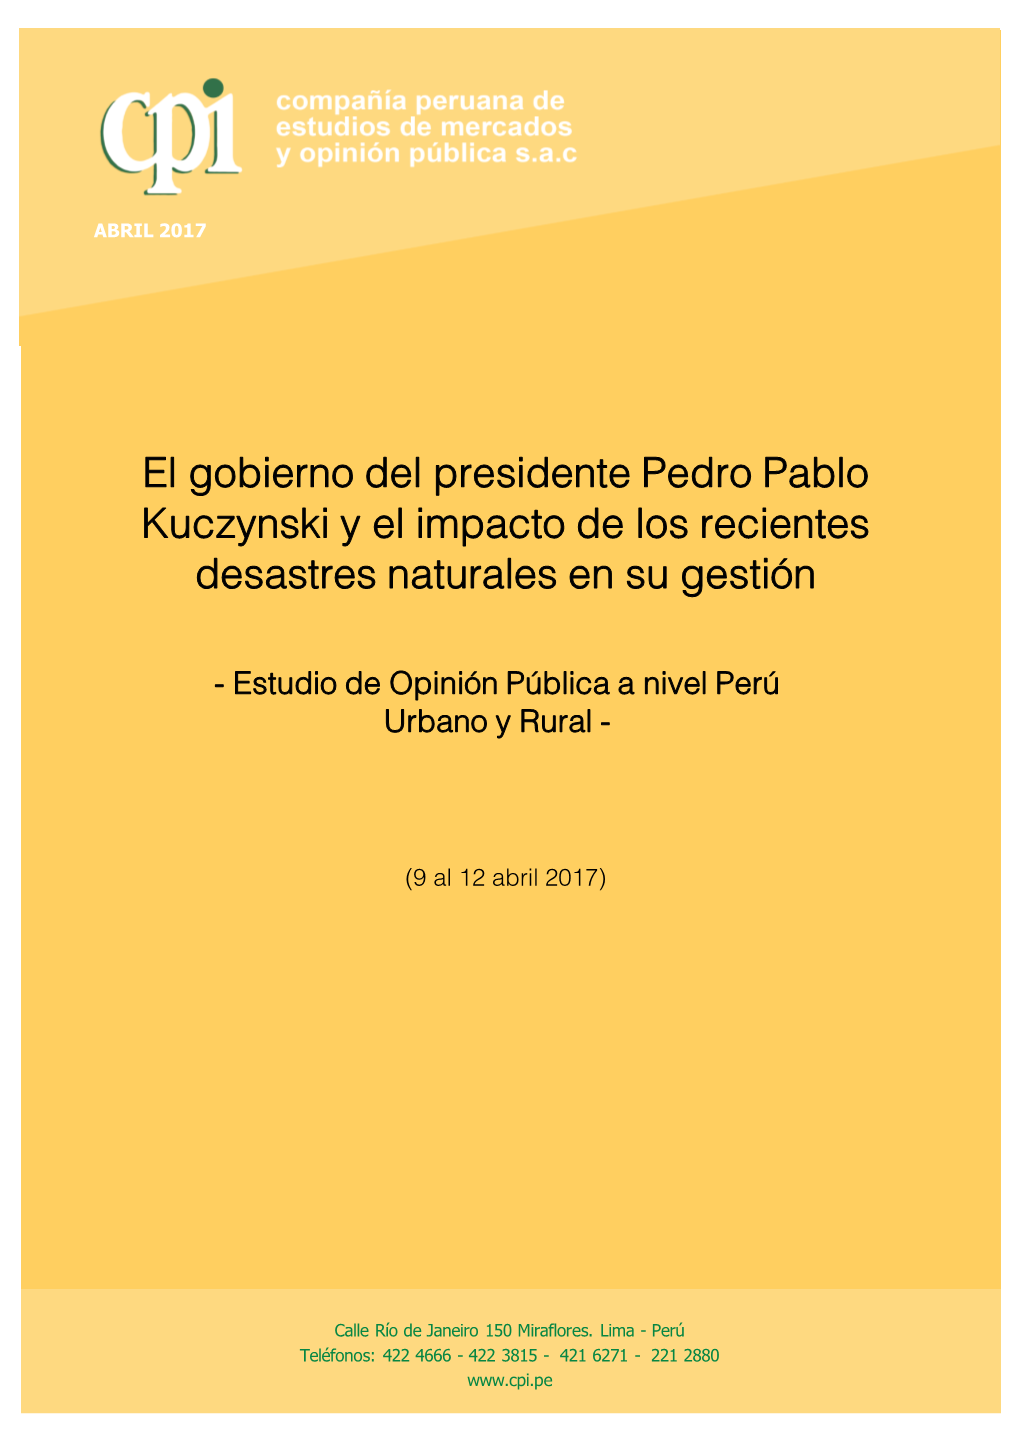 El Gobierno Del Presidente Pedro Pablo Kuczynski Y El Impacto De Los Recientes Desastres Naturales En Su Gestión